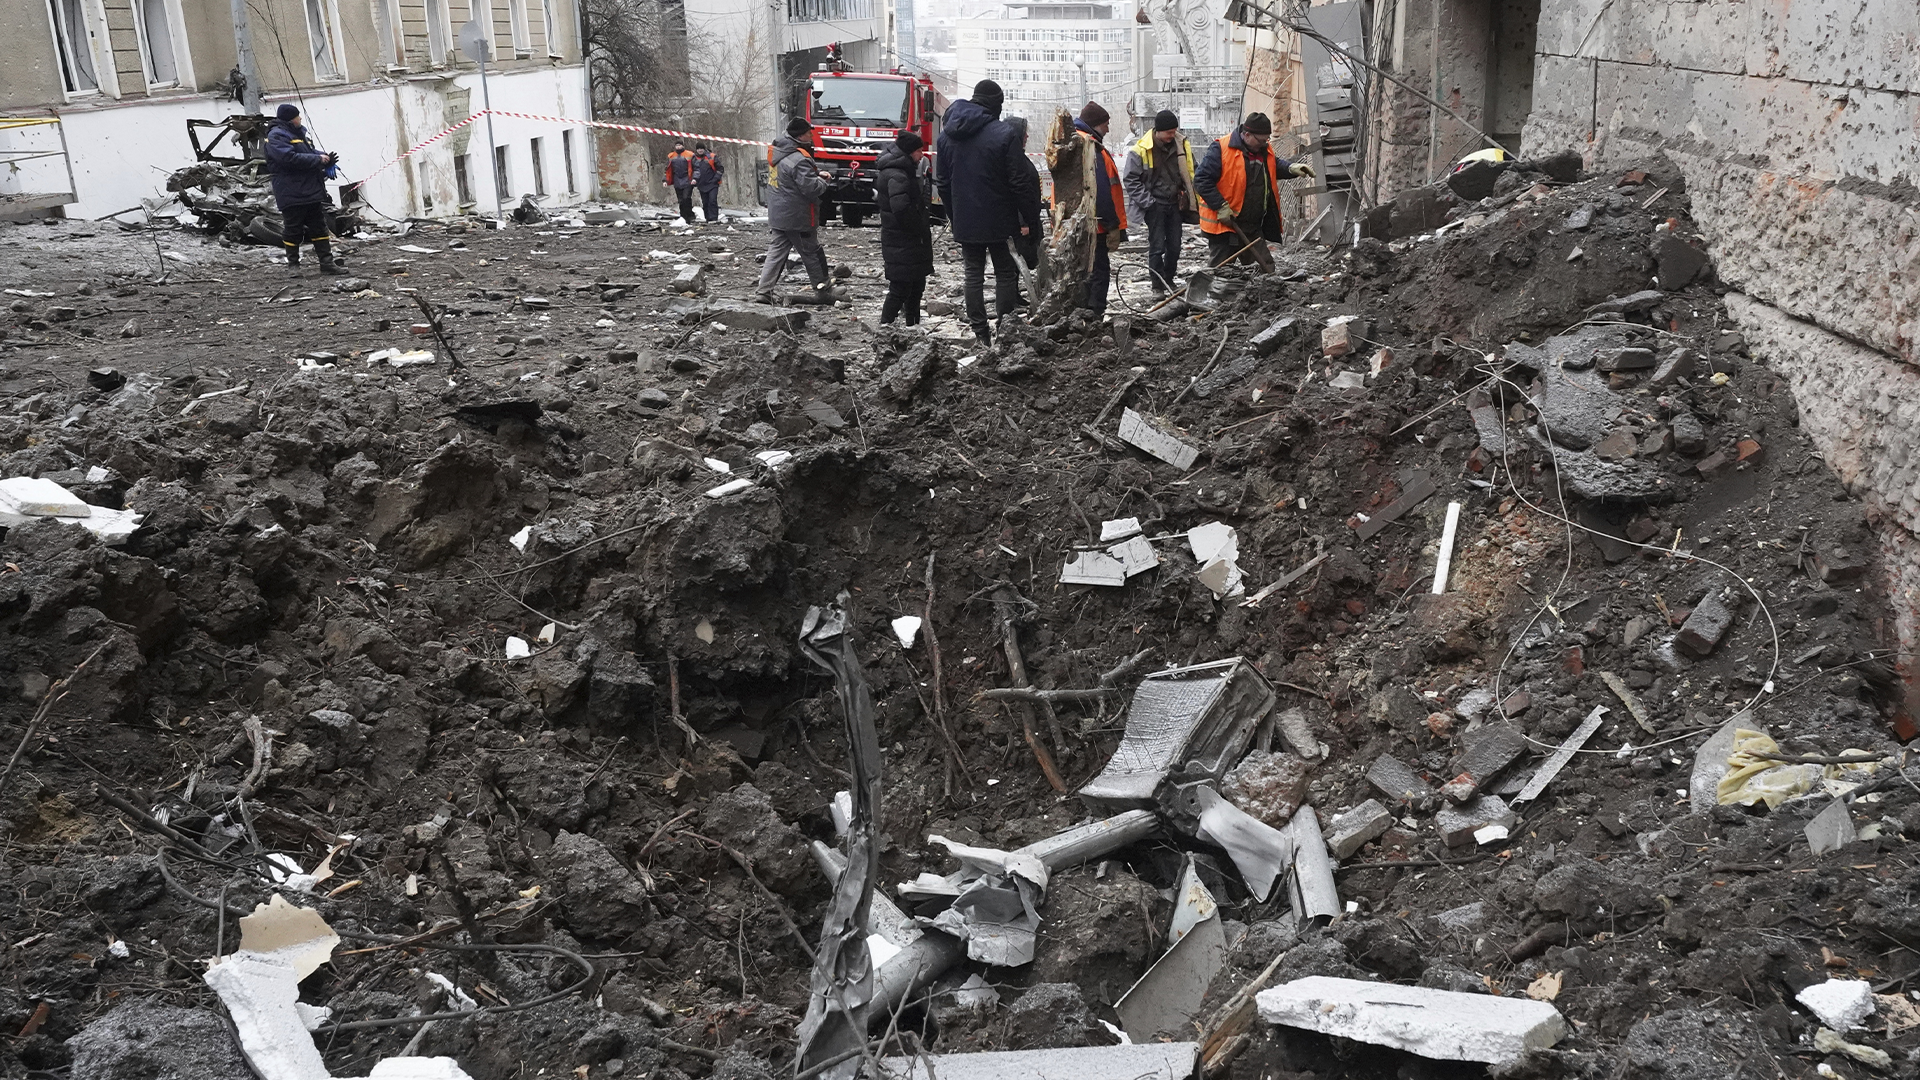 Cinq personnes ont été blessées lorsque des roquettes russes sont tombées sur Kharkiv, la deuxième ville d'Ukraine, ont indiqué les autorités.